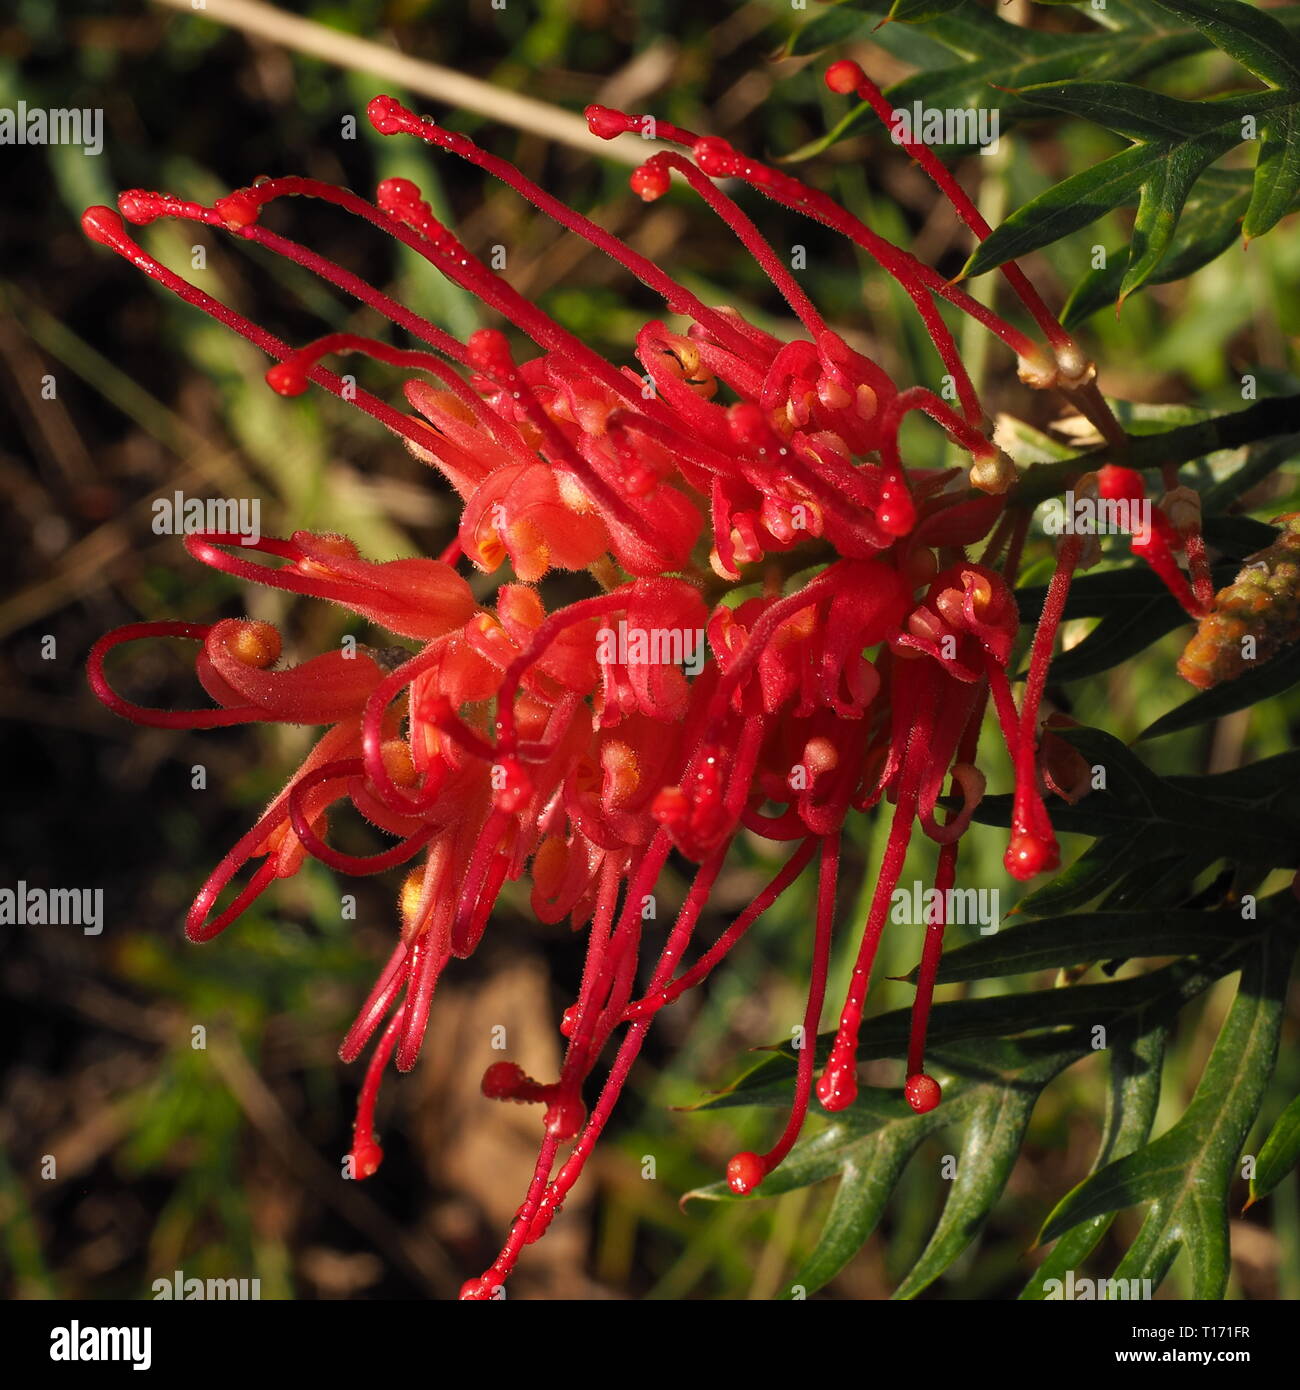 Grevillea fiori. Petali di colore rosso dei nativi australiani Grevillea piante in fiore. Gli uccelli selvatici sono attratti da questi fiori. Foto Stock